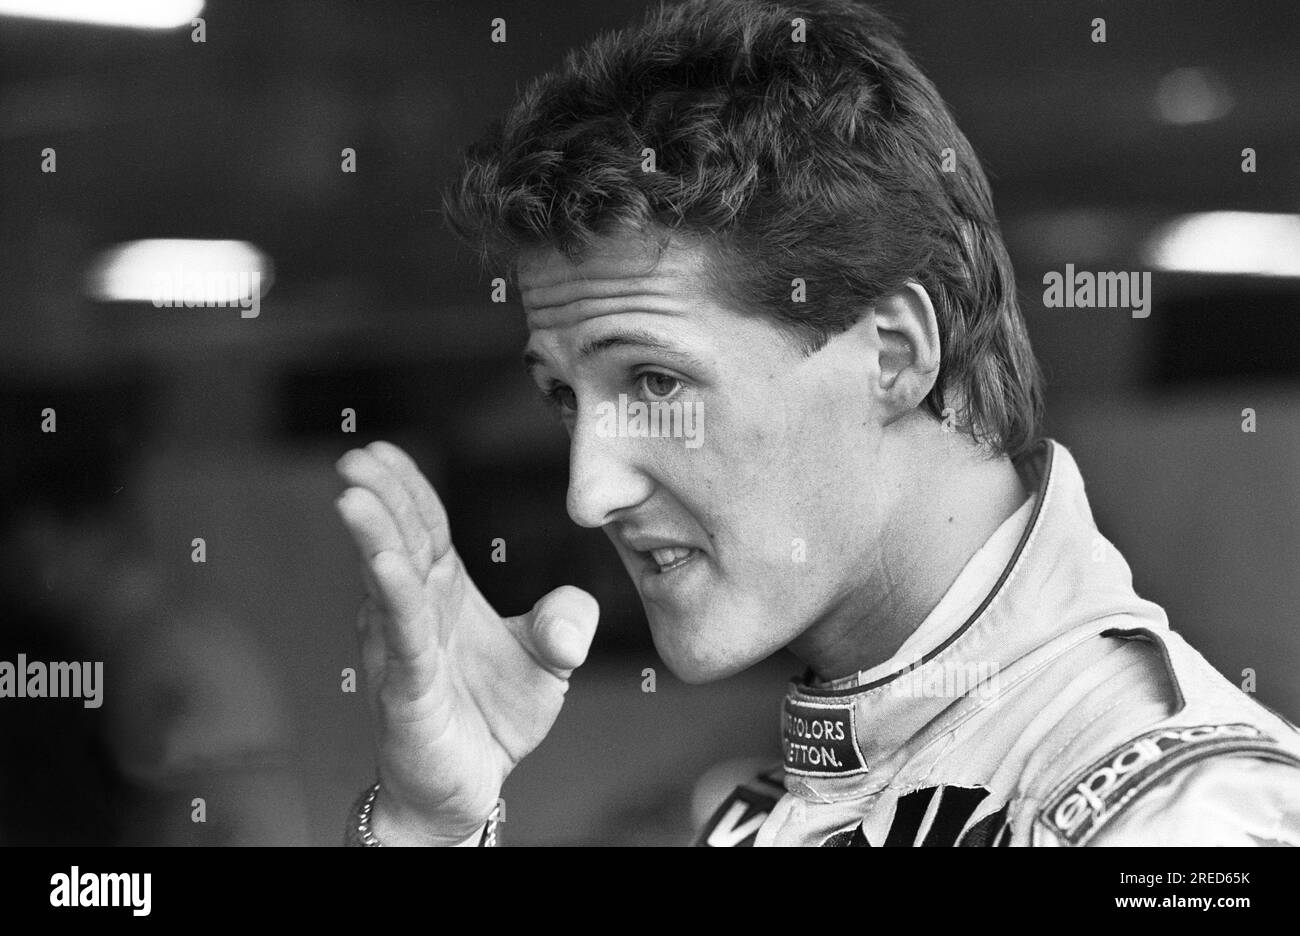 Allemagne, Hockenheim, 15/07/1992 Archive : 35-37-35 essais de Formule 1 au Hockenheimring photo : Michael Schumacher, Camel Benetton Ford [traduction automatique] Banque D'Images